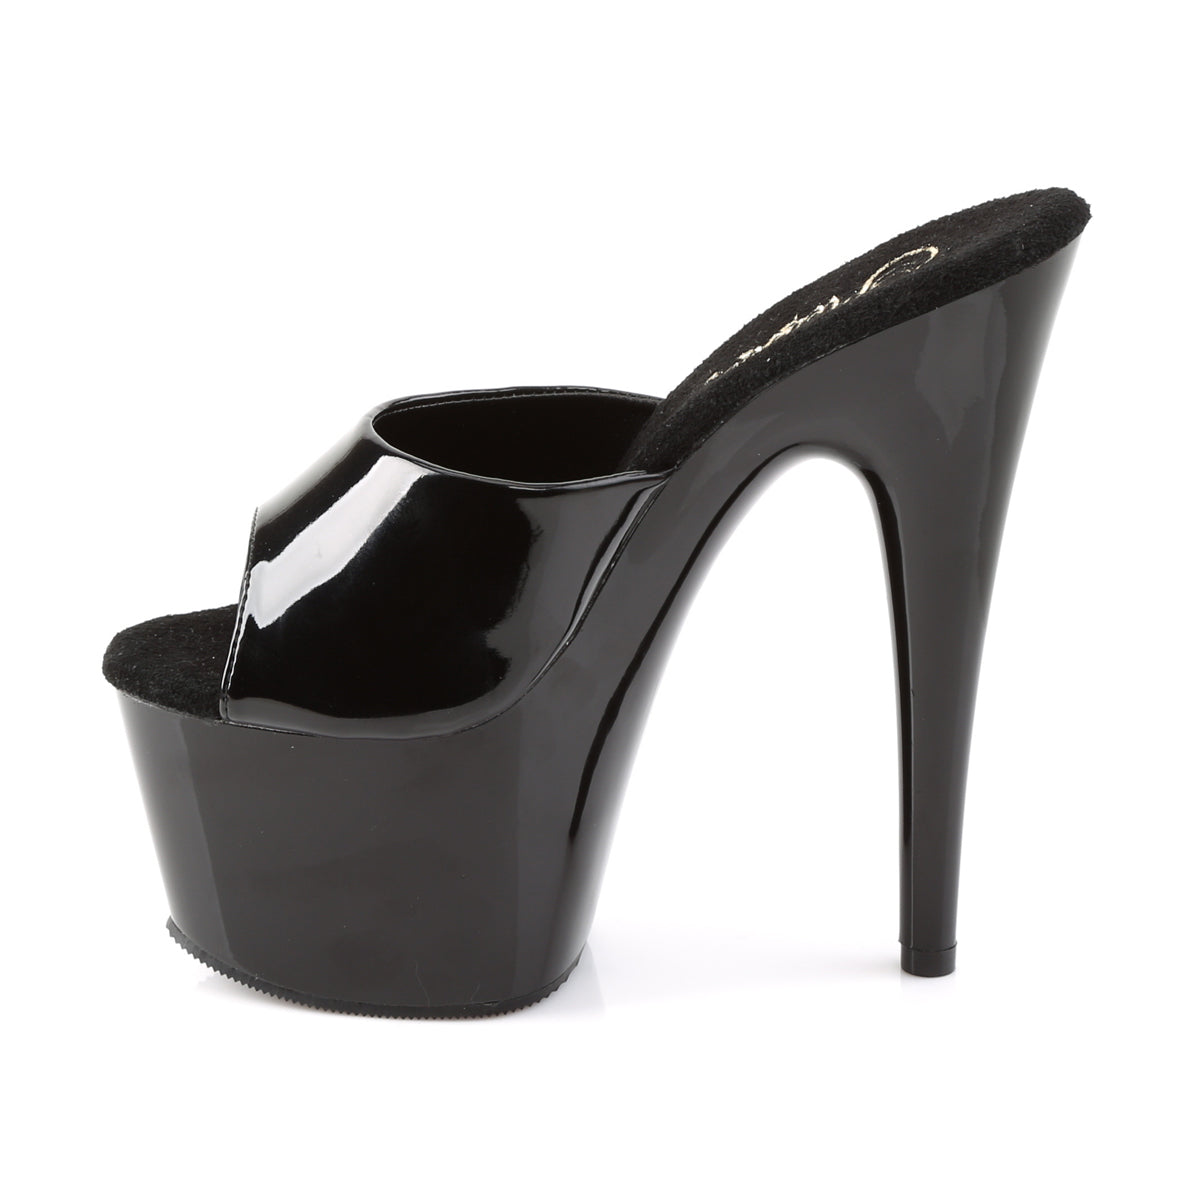 ADORE-701 Pleaser Black Patent Platform Shoes [Exotic Dance Shoes]